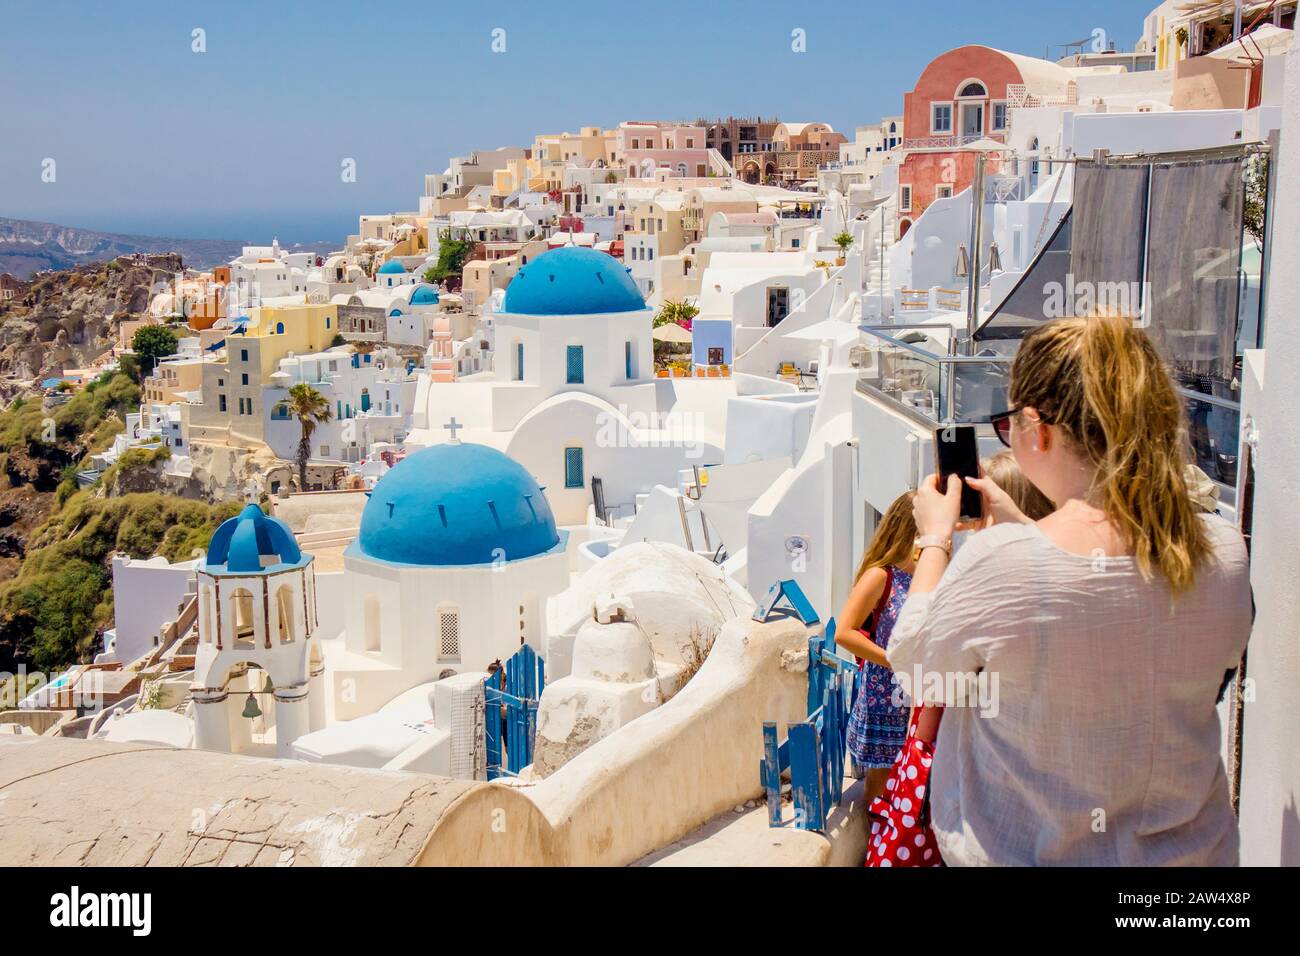 Famosa cupola blu chiesa ortodossa nel villaggio di Oia sull'isola di Santorini in Grecia in Europa. Giovane donna turista scattare una foto con smartphon Foto Stock